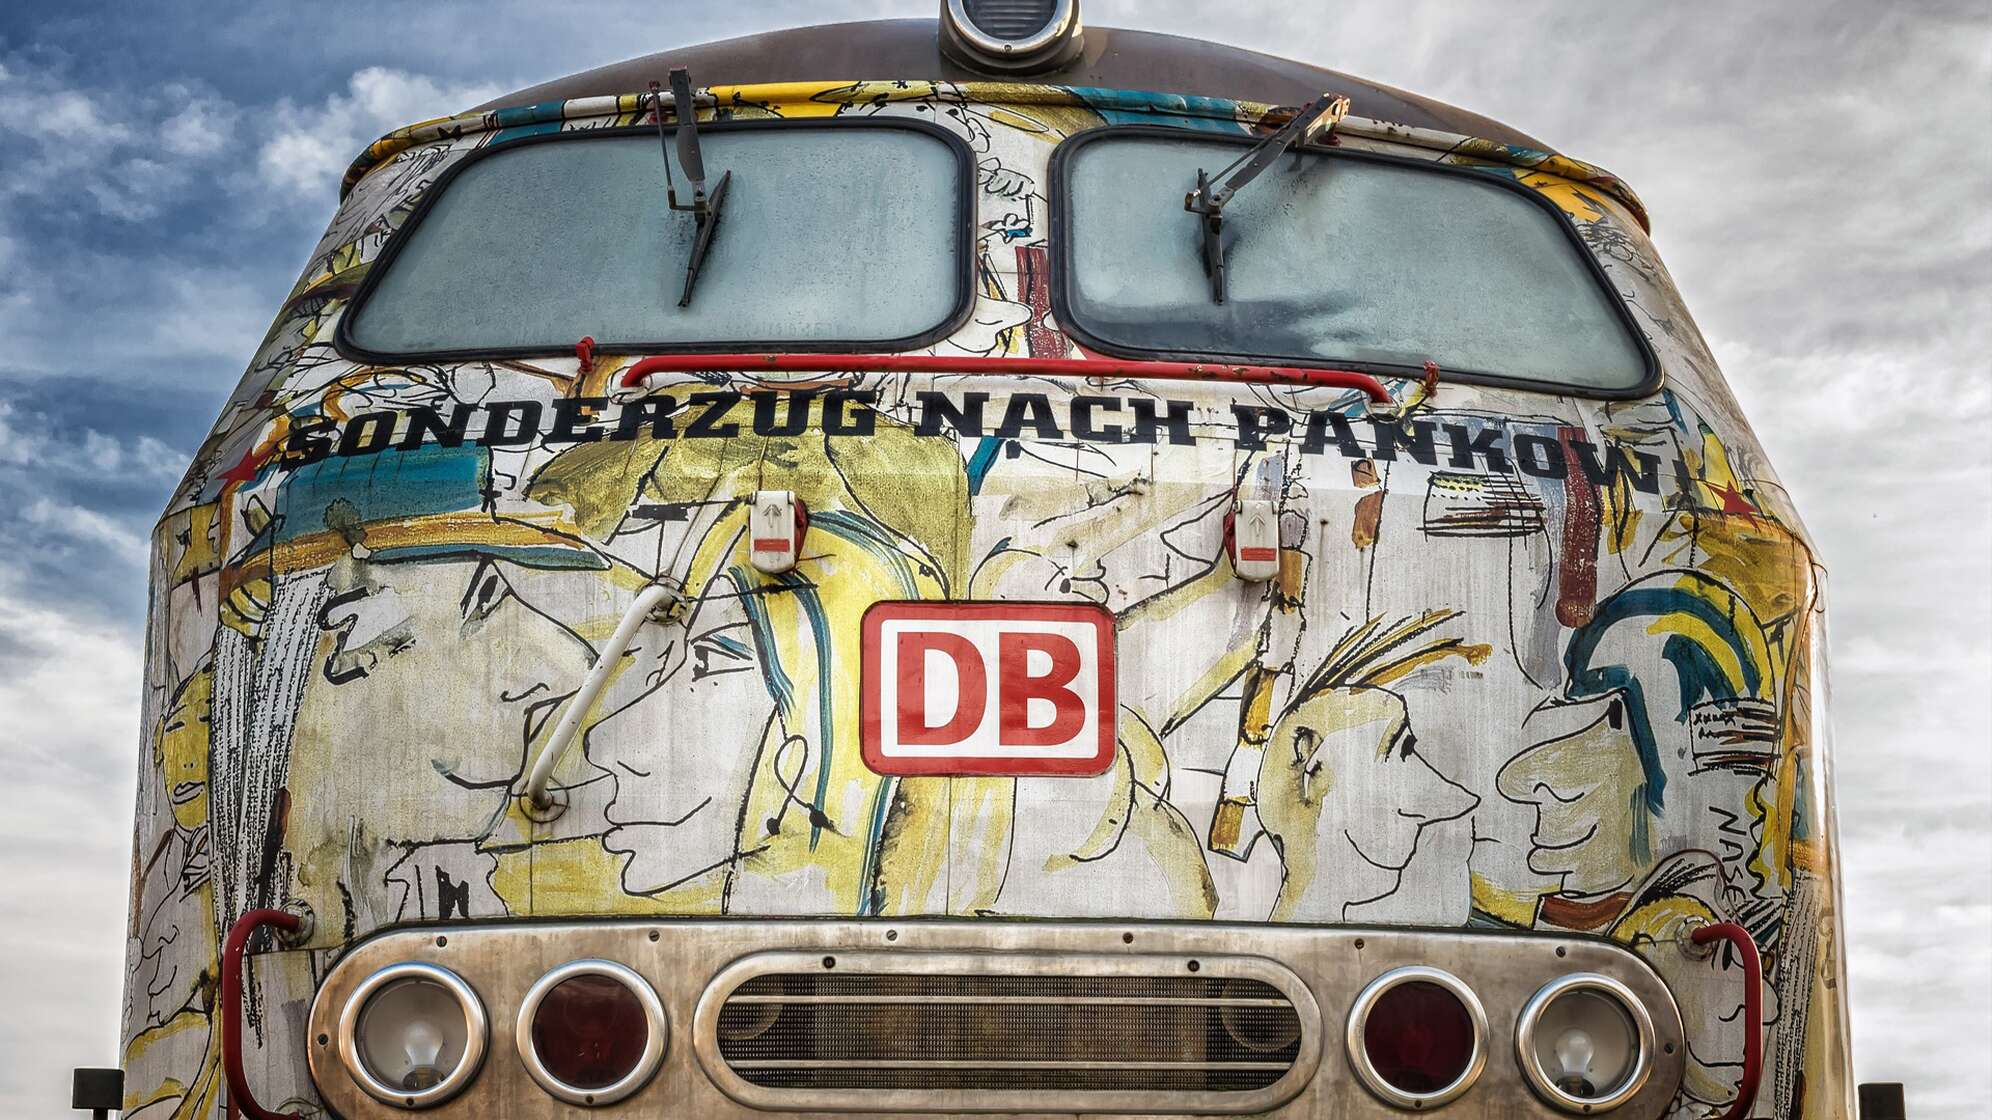 Bild von einem Zug von Vorne mit dem Schriftzug "Sonderzug nach Pankow"